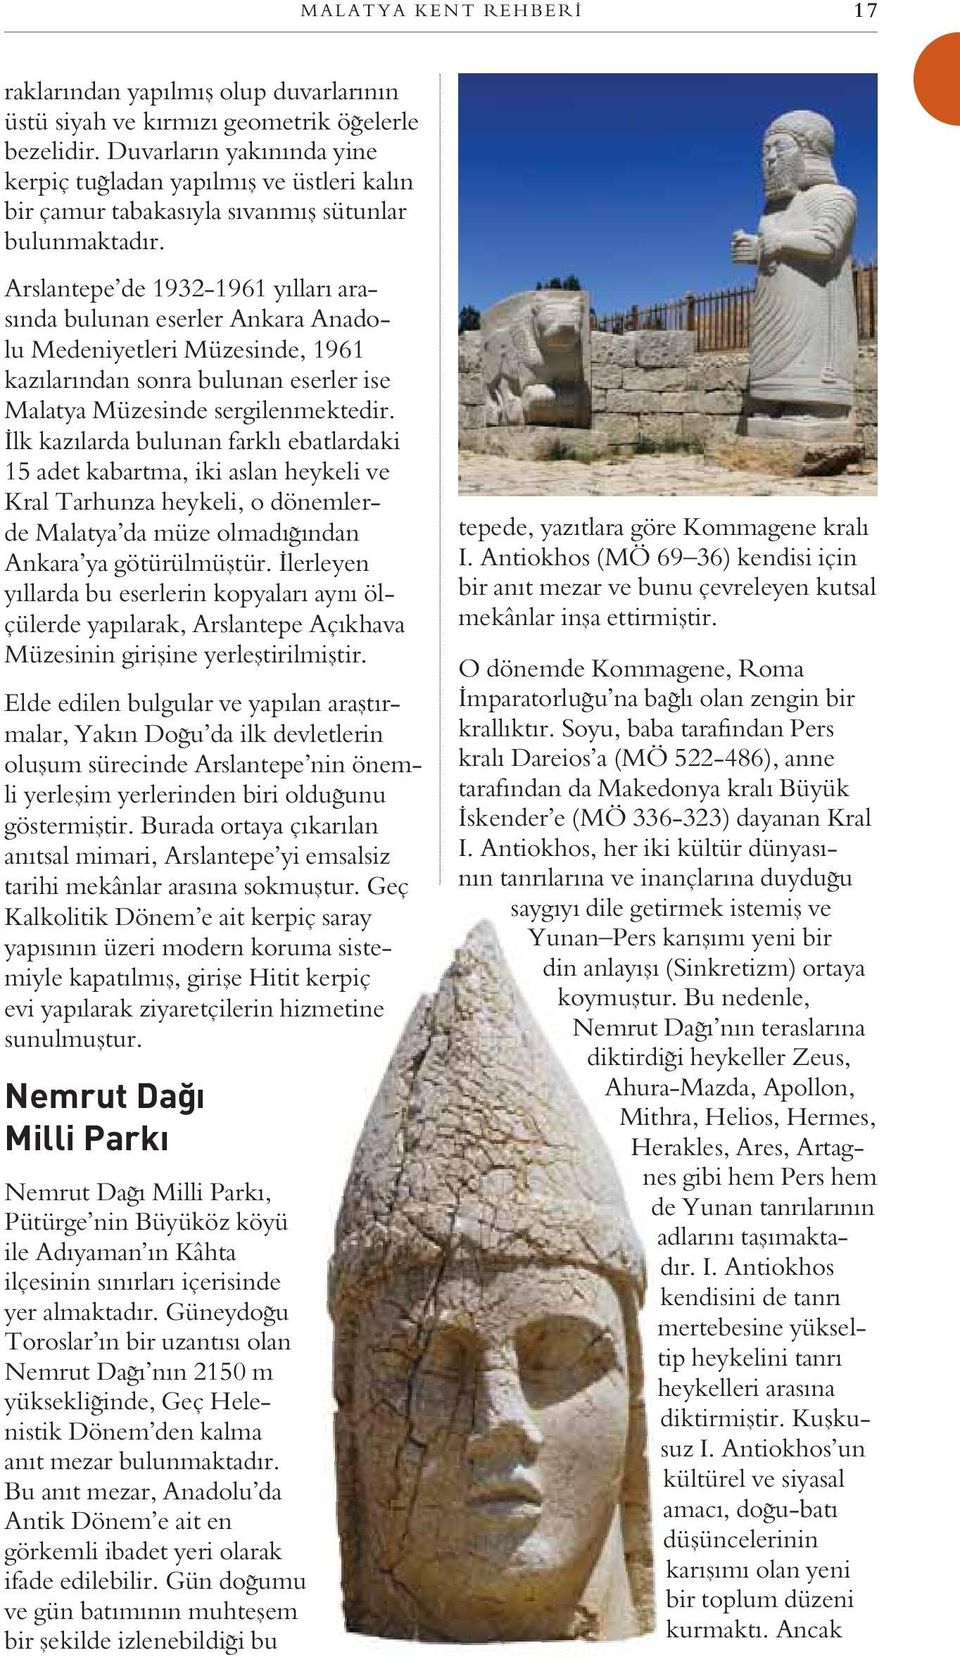 Arslantepe de 1932-1961 yılları arasında bulunan eserler Ankara Anadolu Medeniyetleri Müzesinde, 1961 kazılarından sonra bulunan eserler ise Malatya Müzesinde sergilenmektedir.